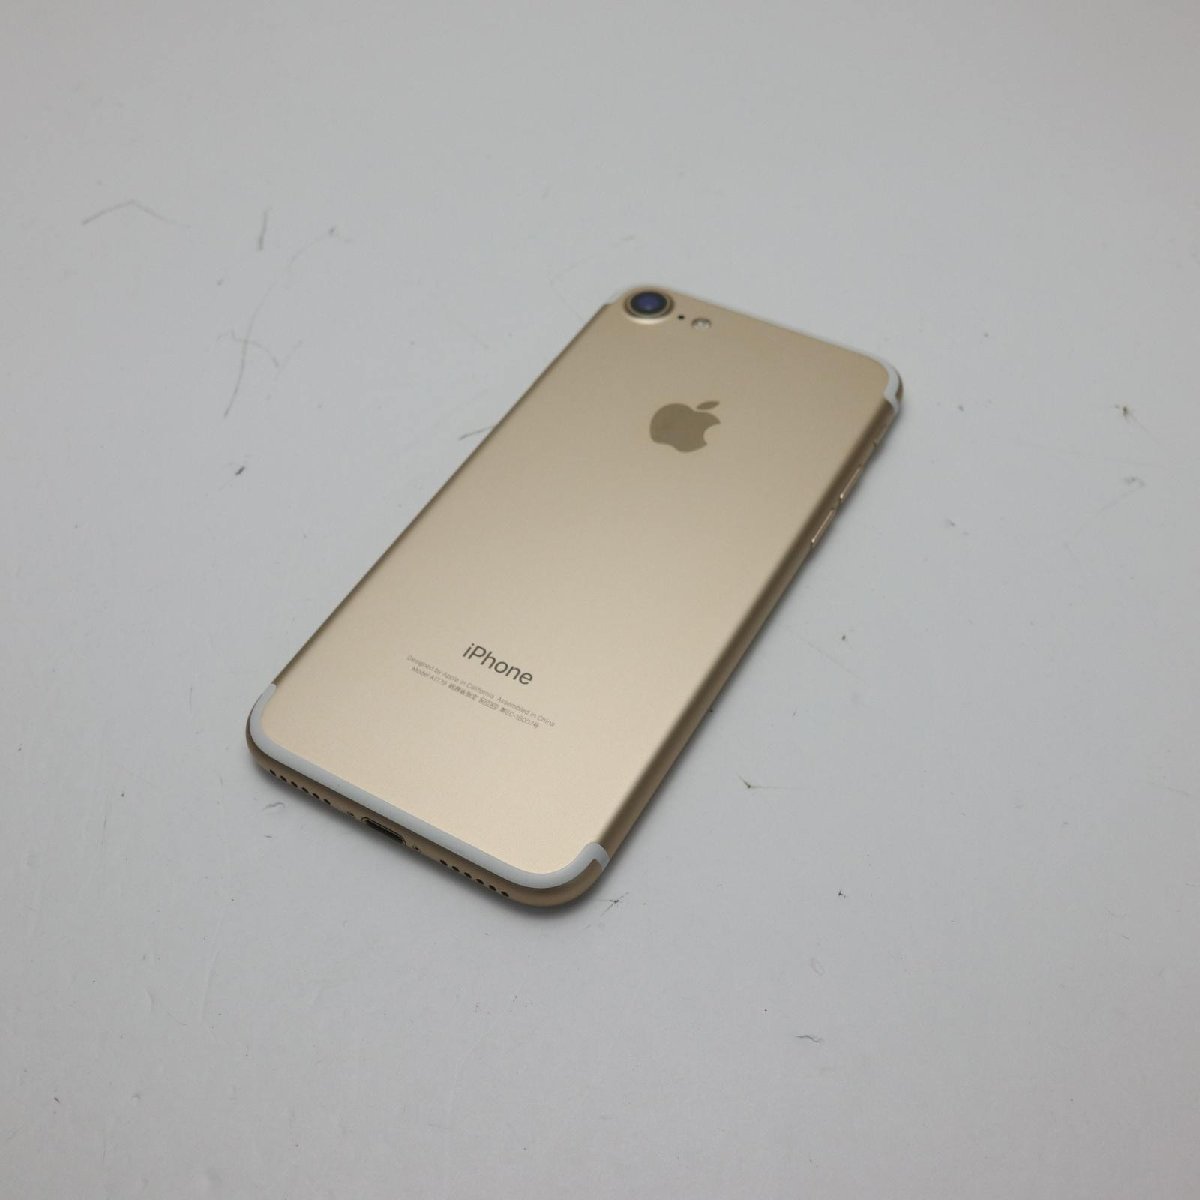 新品同様 SIMフリー iPhone7 32GB ゴールド 即日発送 スマホ apple